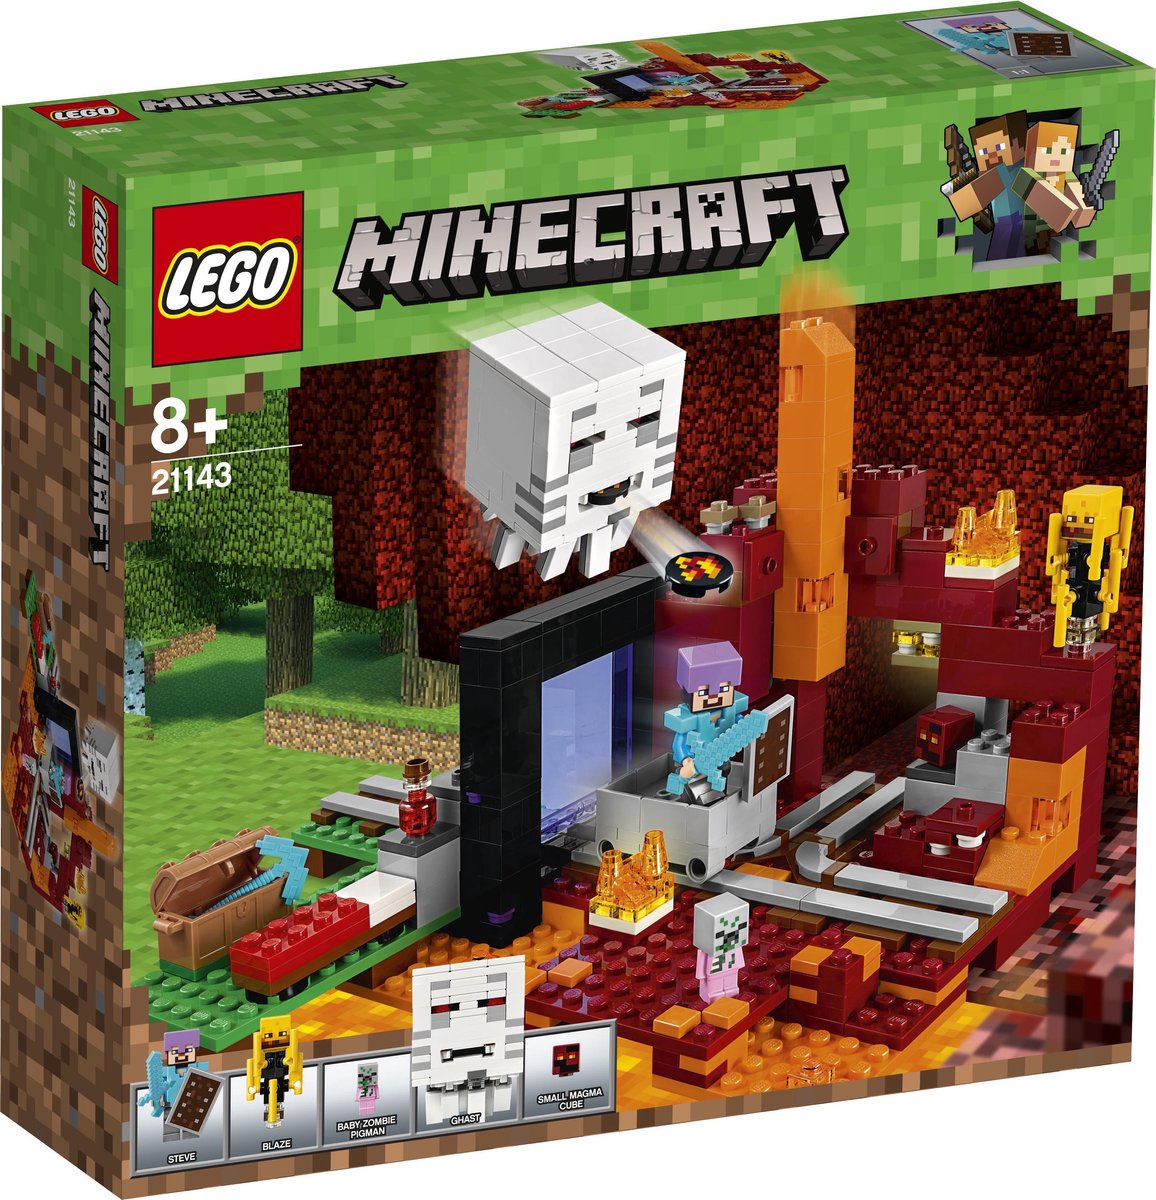 LEGO Minecraft 21169 pas cher, La première aventure